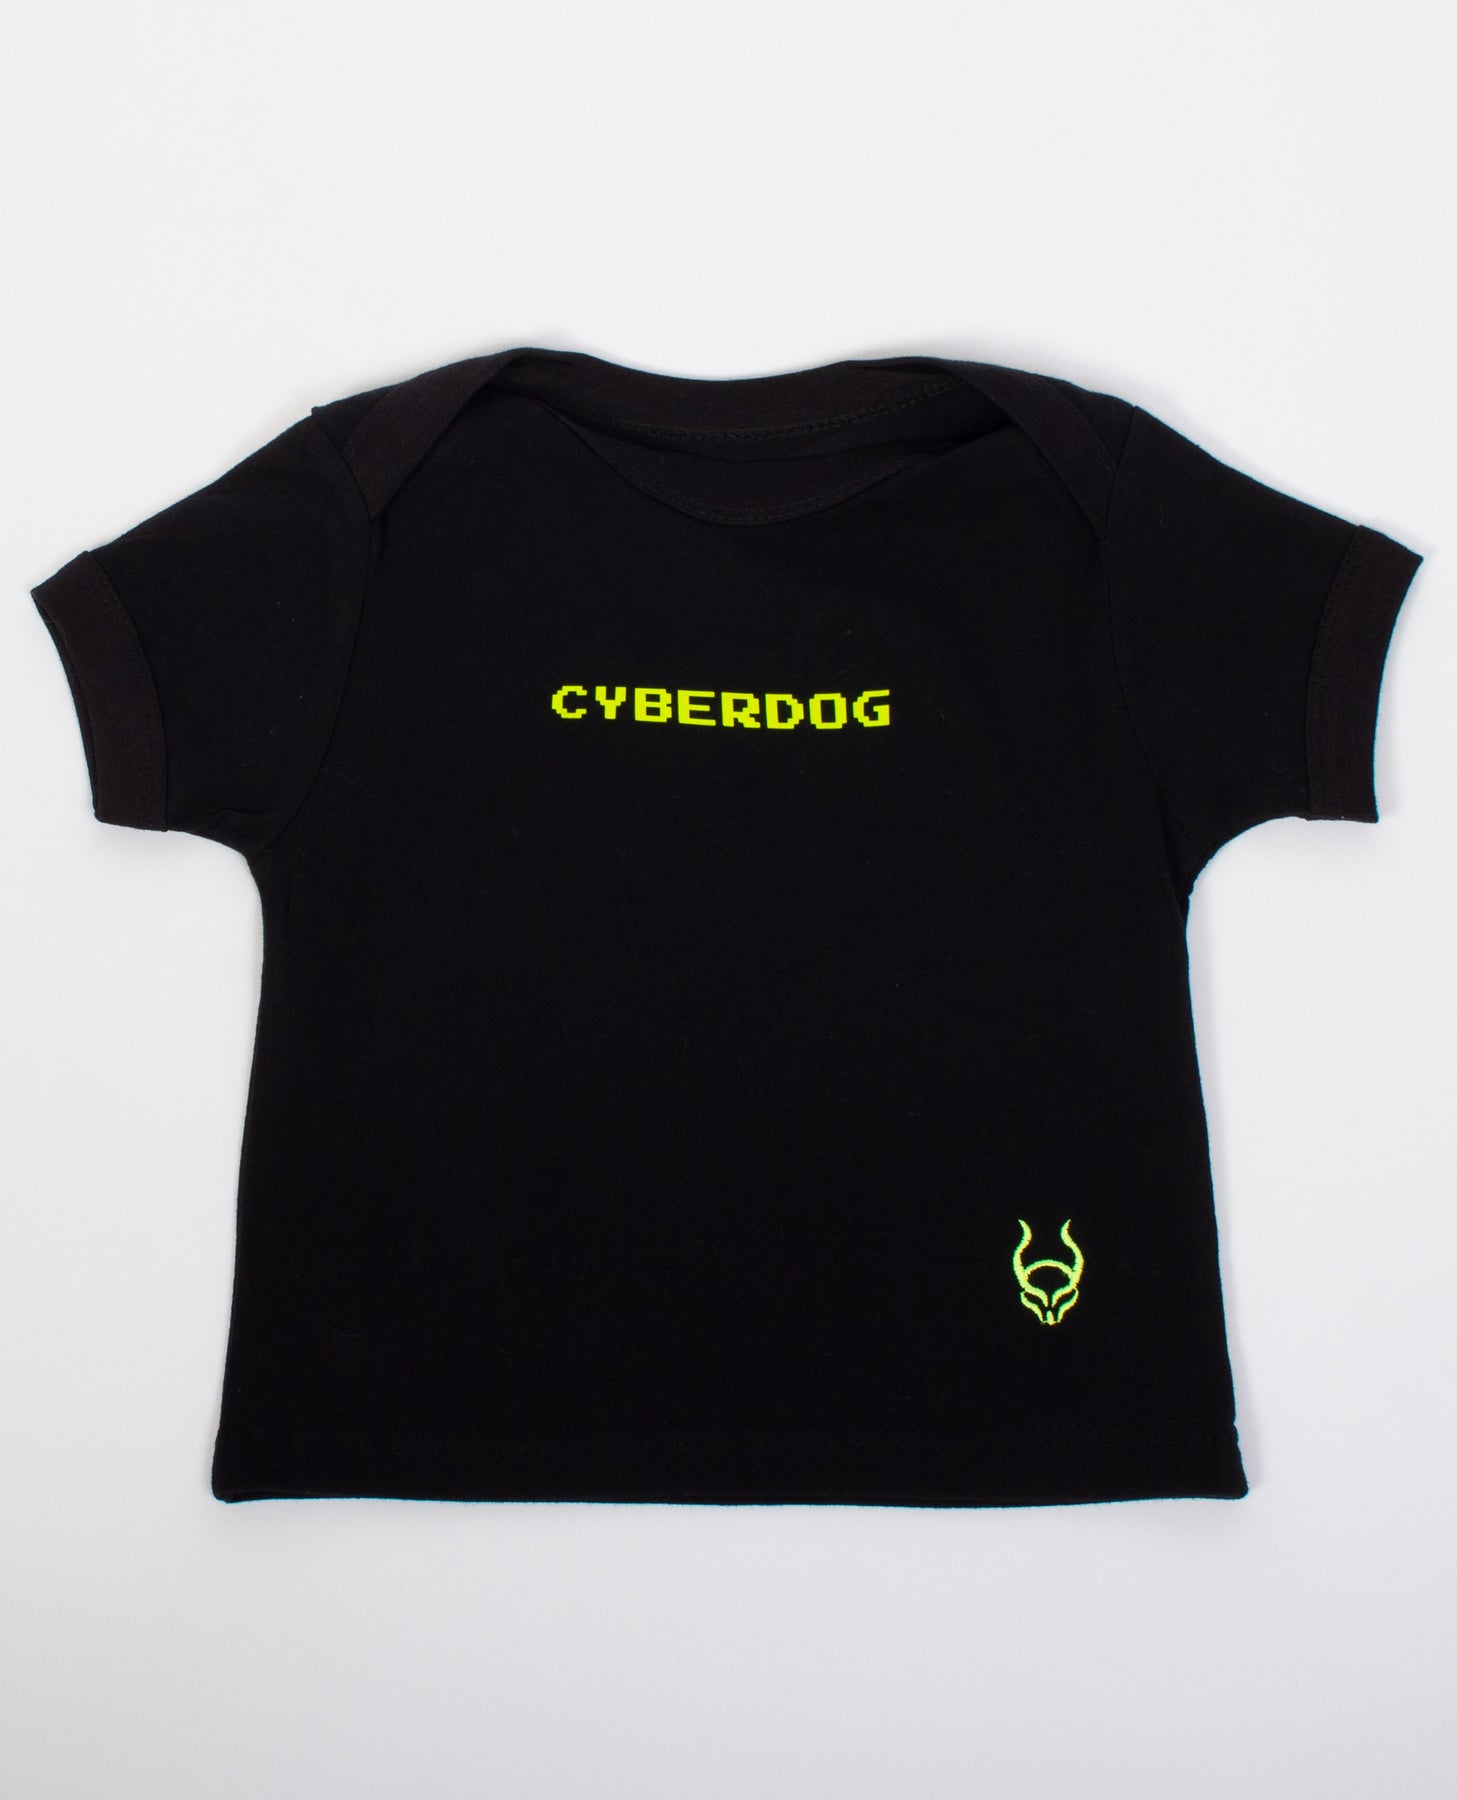 BABY TEE CYBERDOG | Cyberdog London by Cyberdog - Rave clothing ...